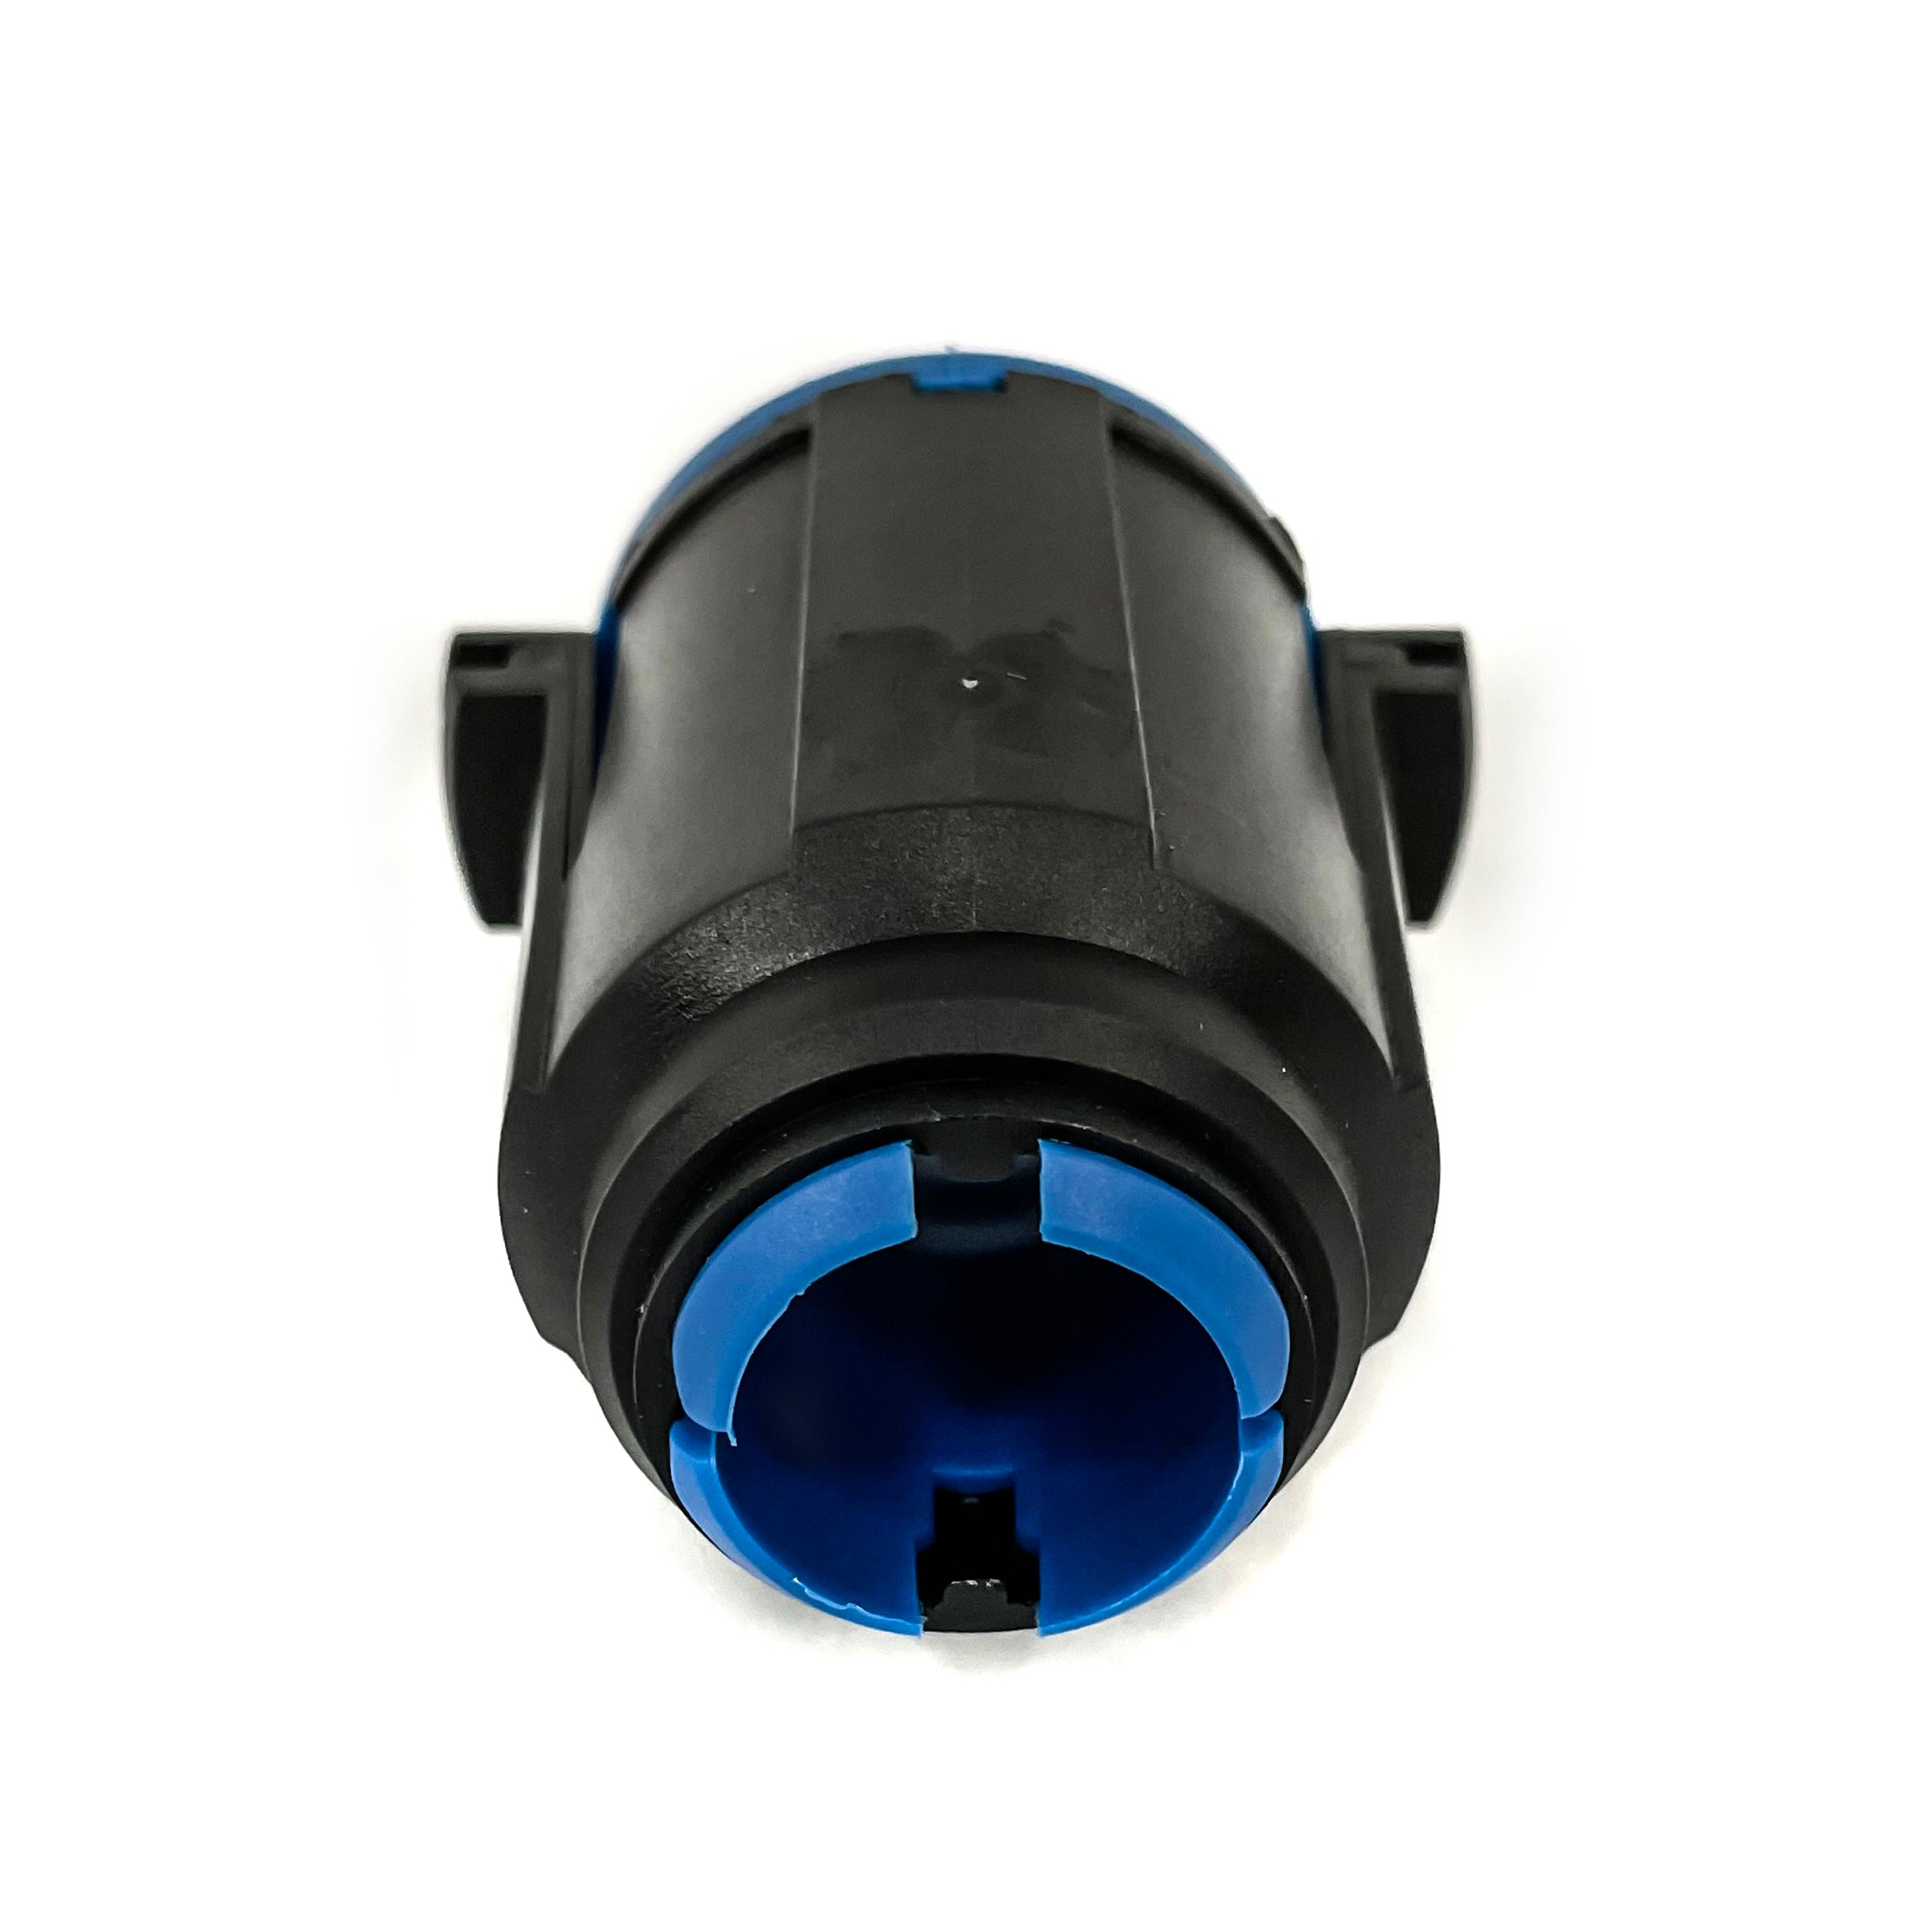 Adaptateur magnétique pour réservoir/pistolet AdBlue®